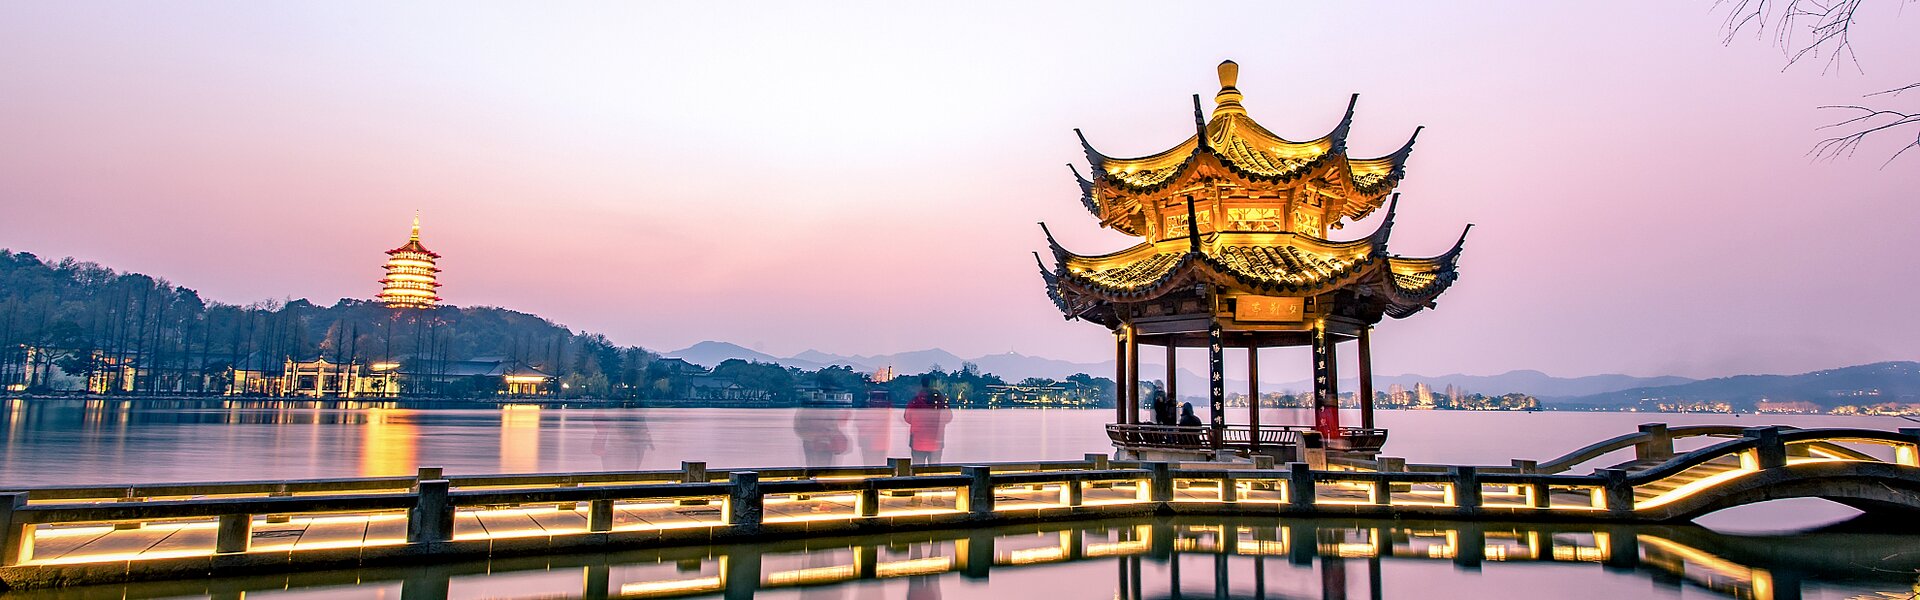 Kinh nghiệm du lịch Trung Quốc tự túc chi tiết nhất : Hành trình khám phá nền văn hóa và lịch sử đồ sộ nhất Châu Á